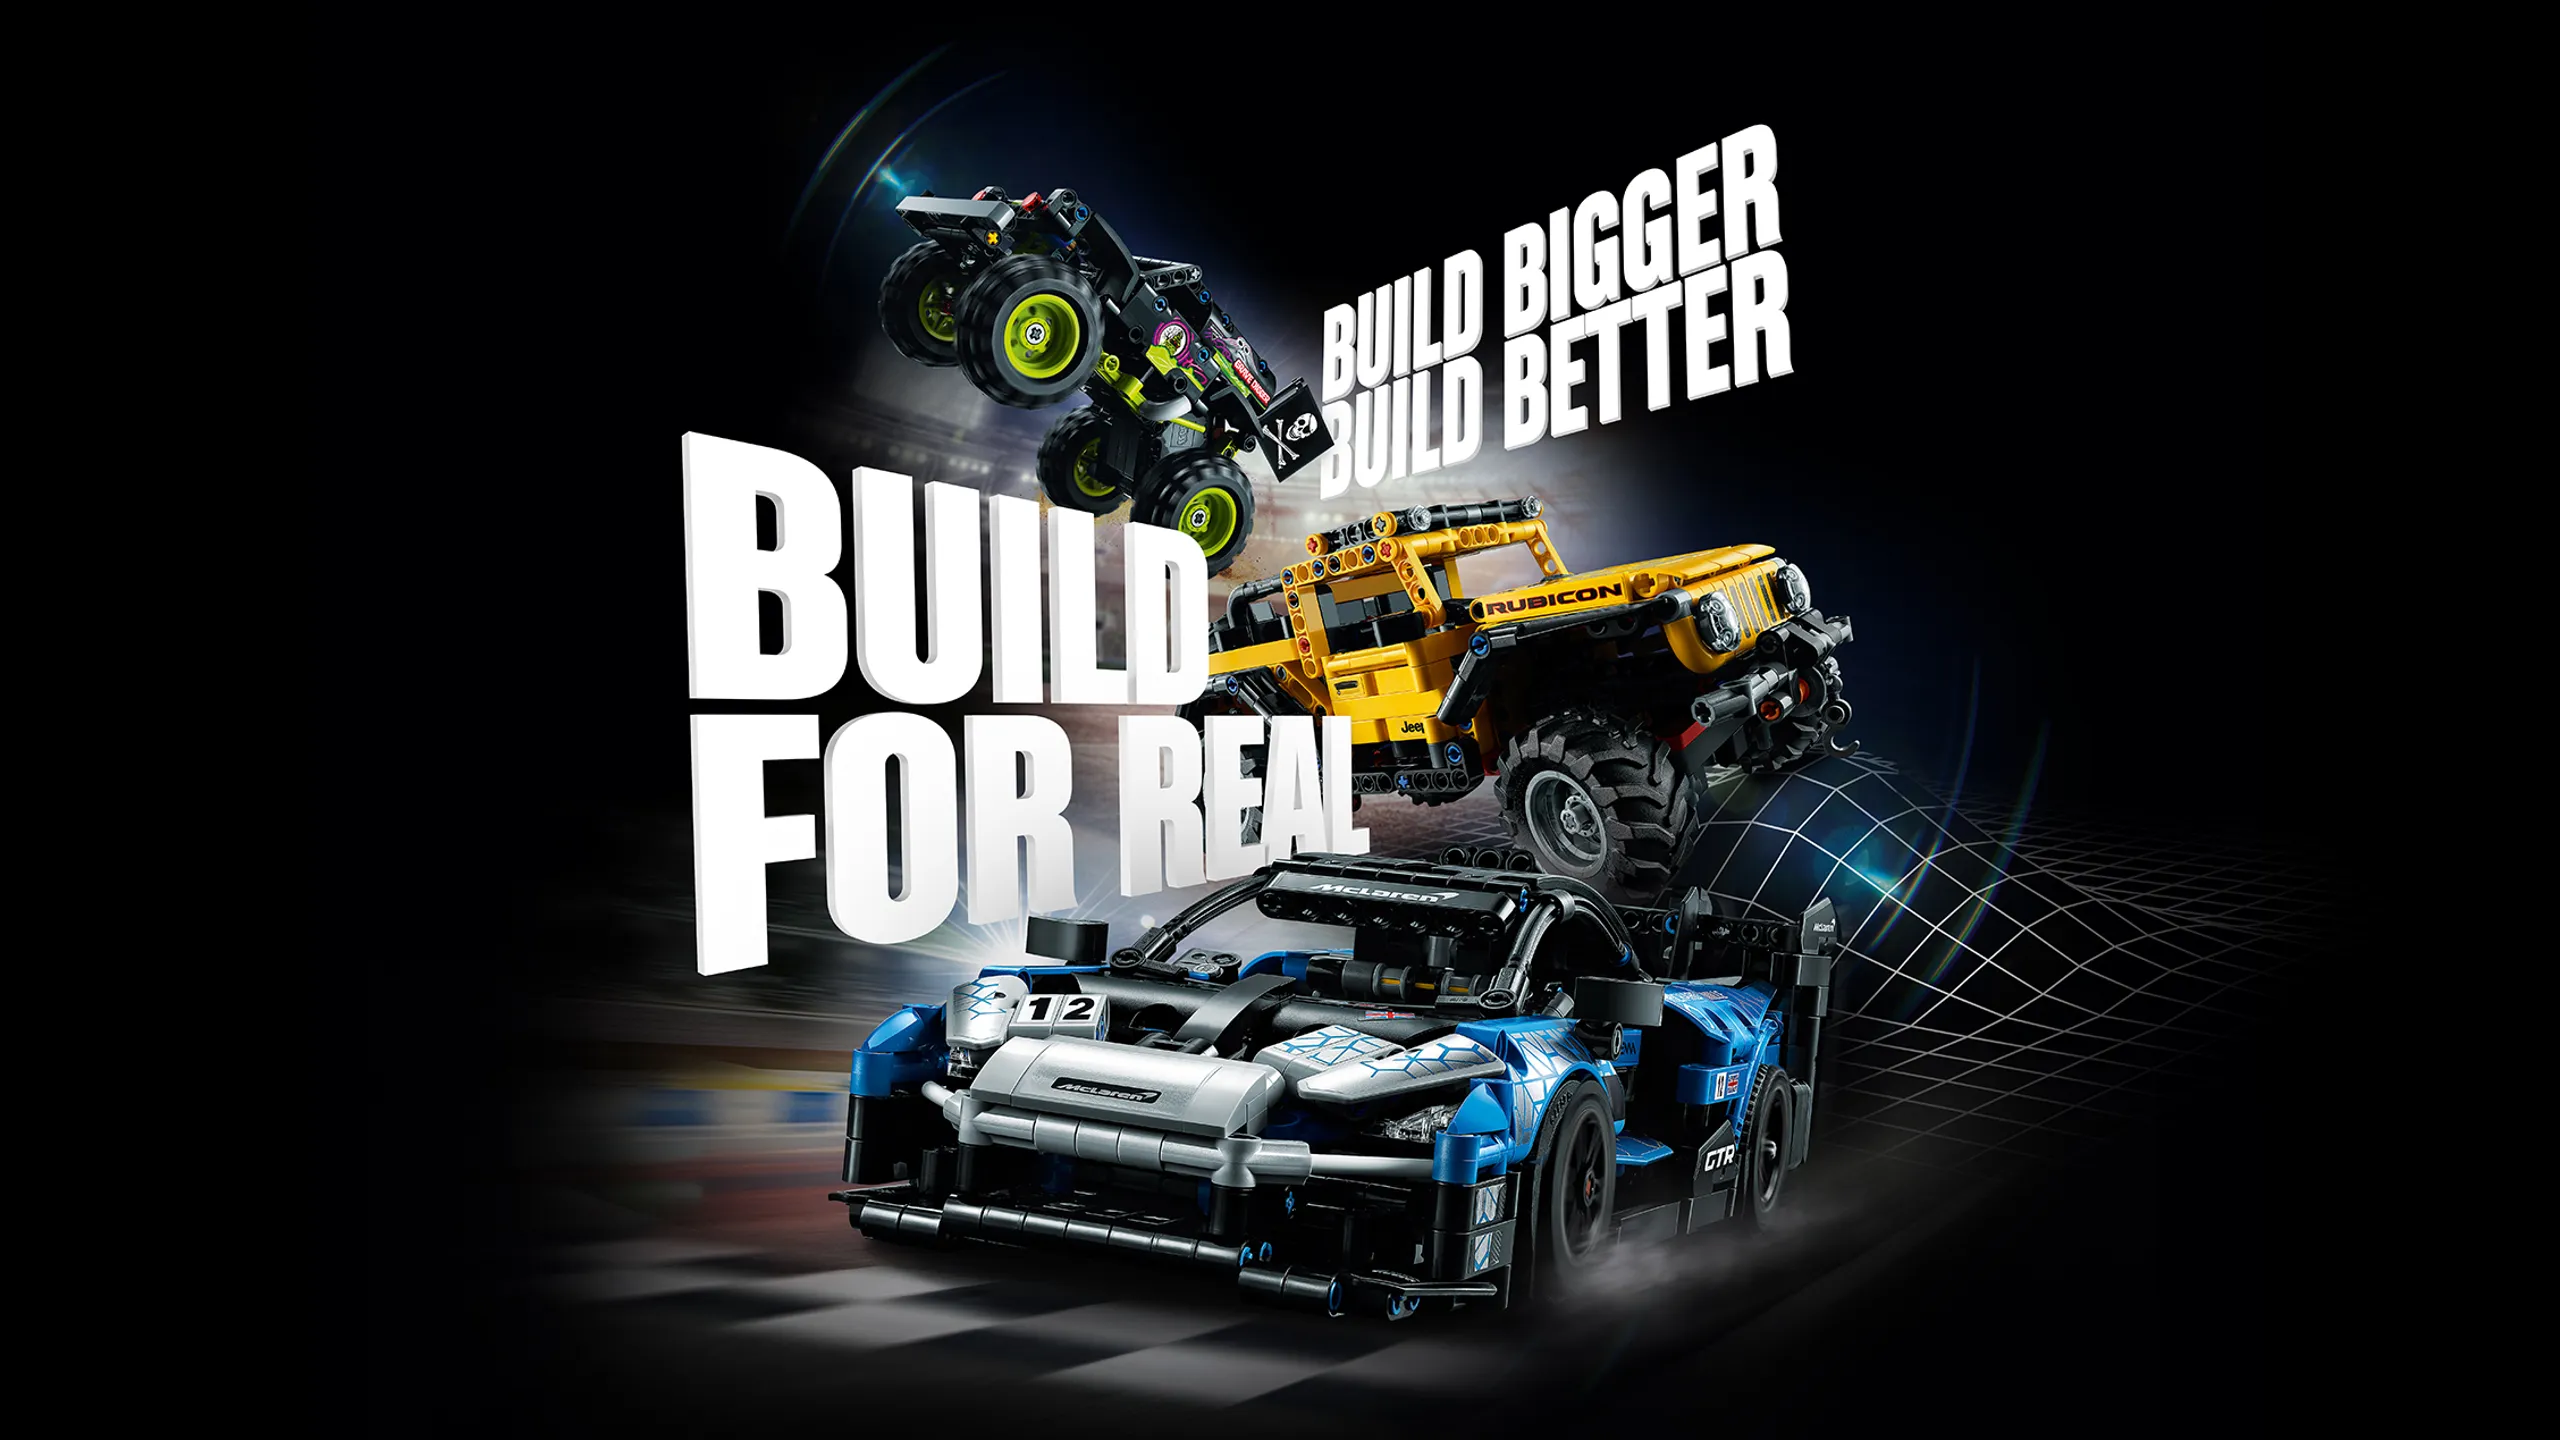 En promotion, ce LEGO Technic complexe est l'une des plus belles voitures  de course à construire en briques ! 